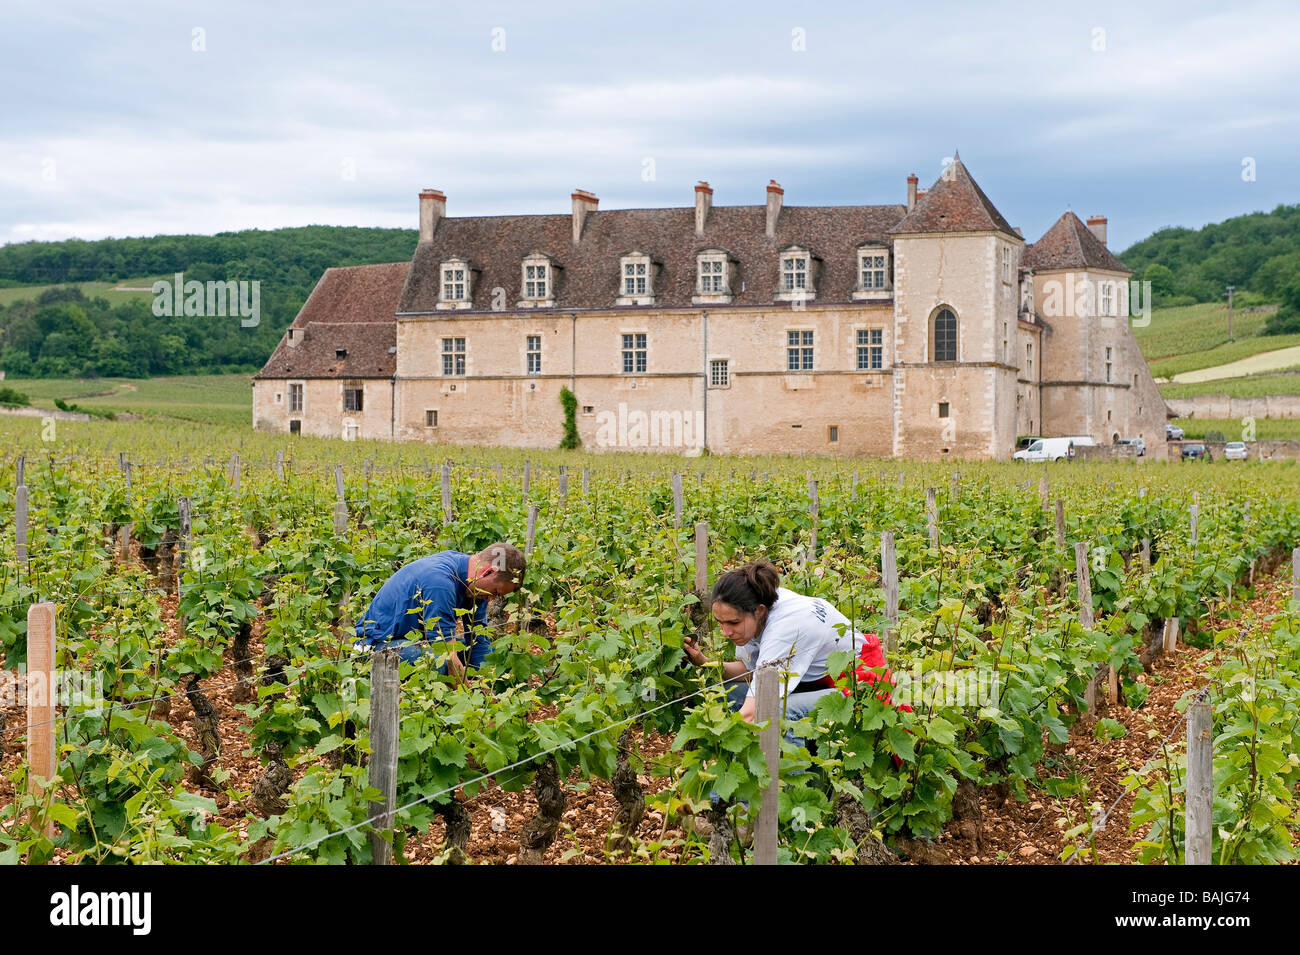 France, Cote d'Or, Clos de Vougeot, the castle (vineyard Cotes de Nuit), maintenance of the vine Stock Photo